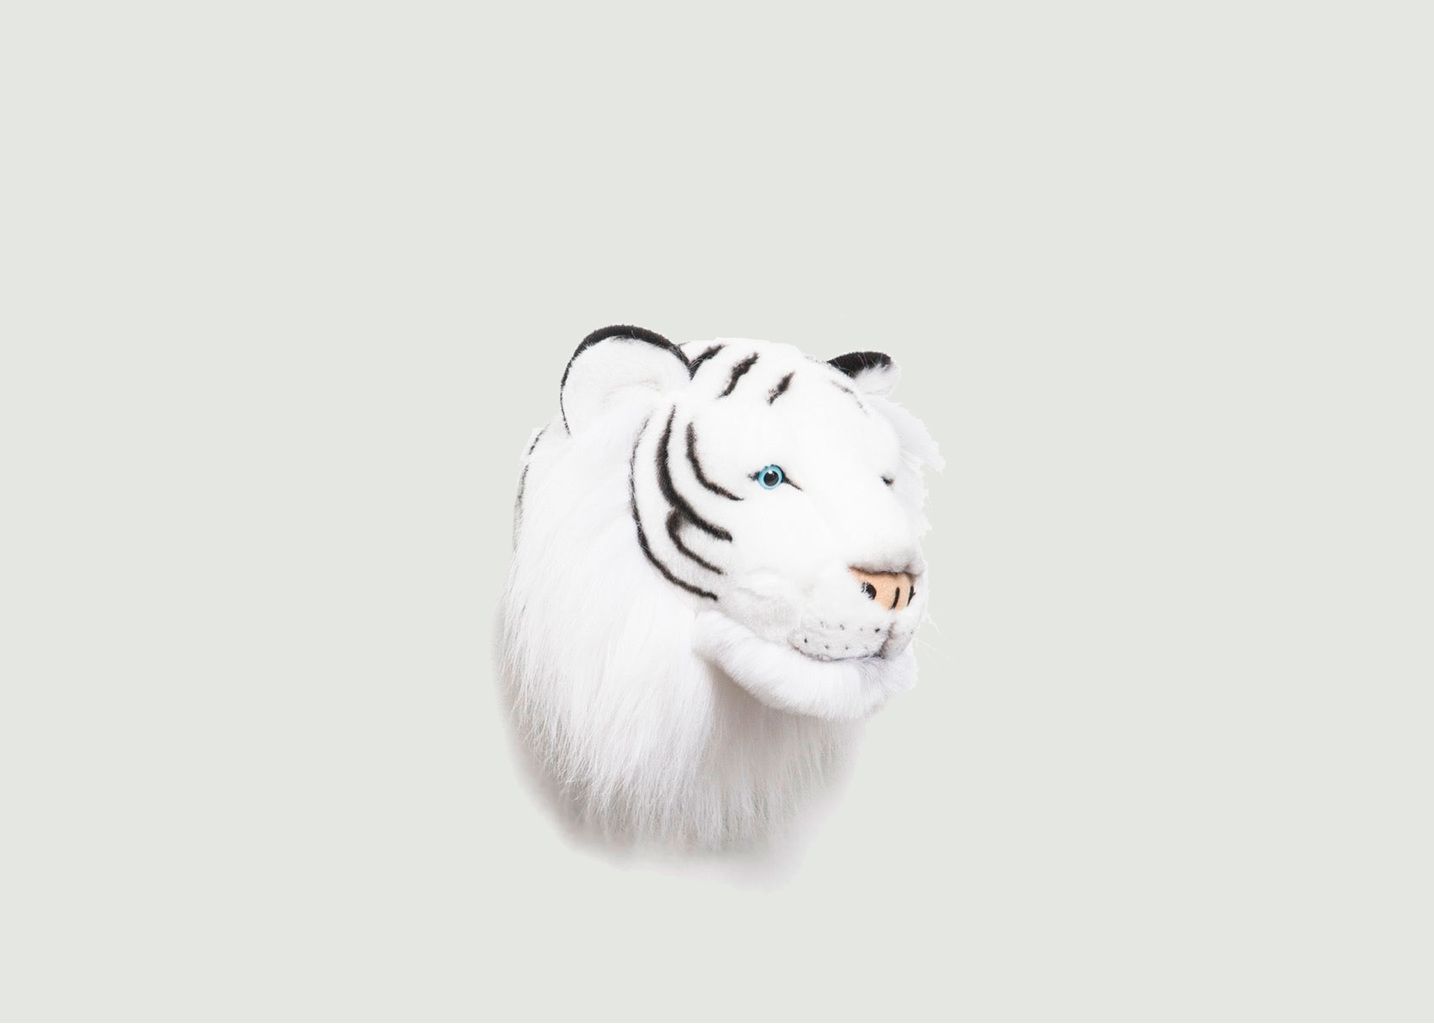 Tête de tigre Albert - Wild & Soft